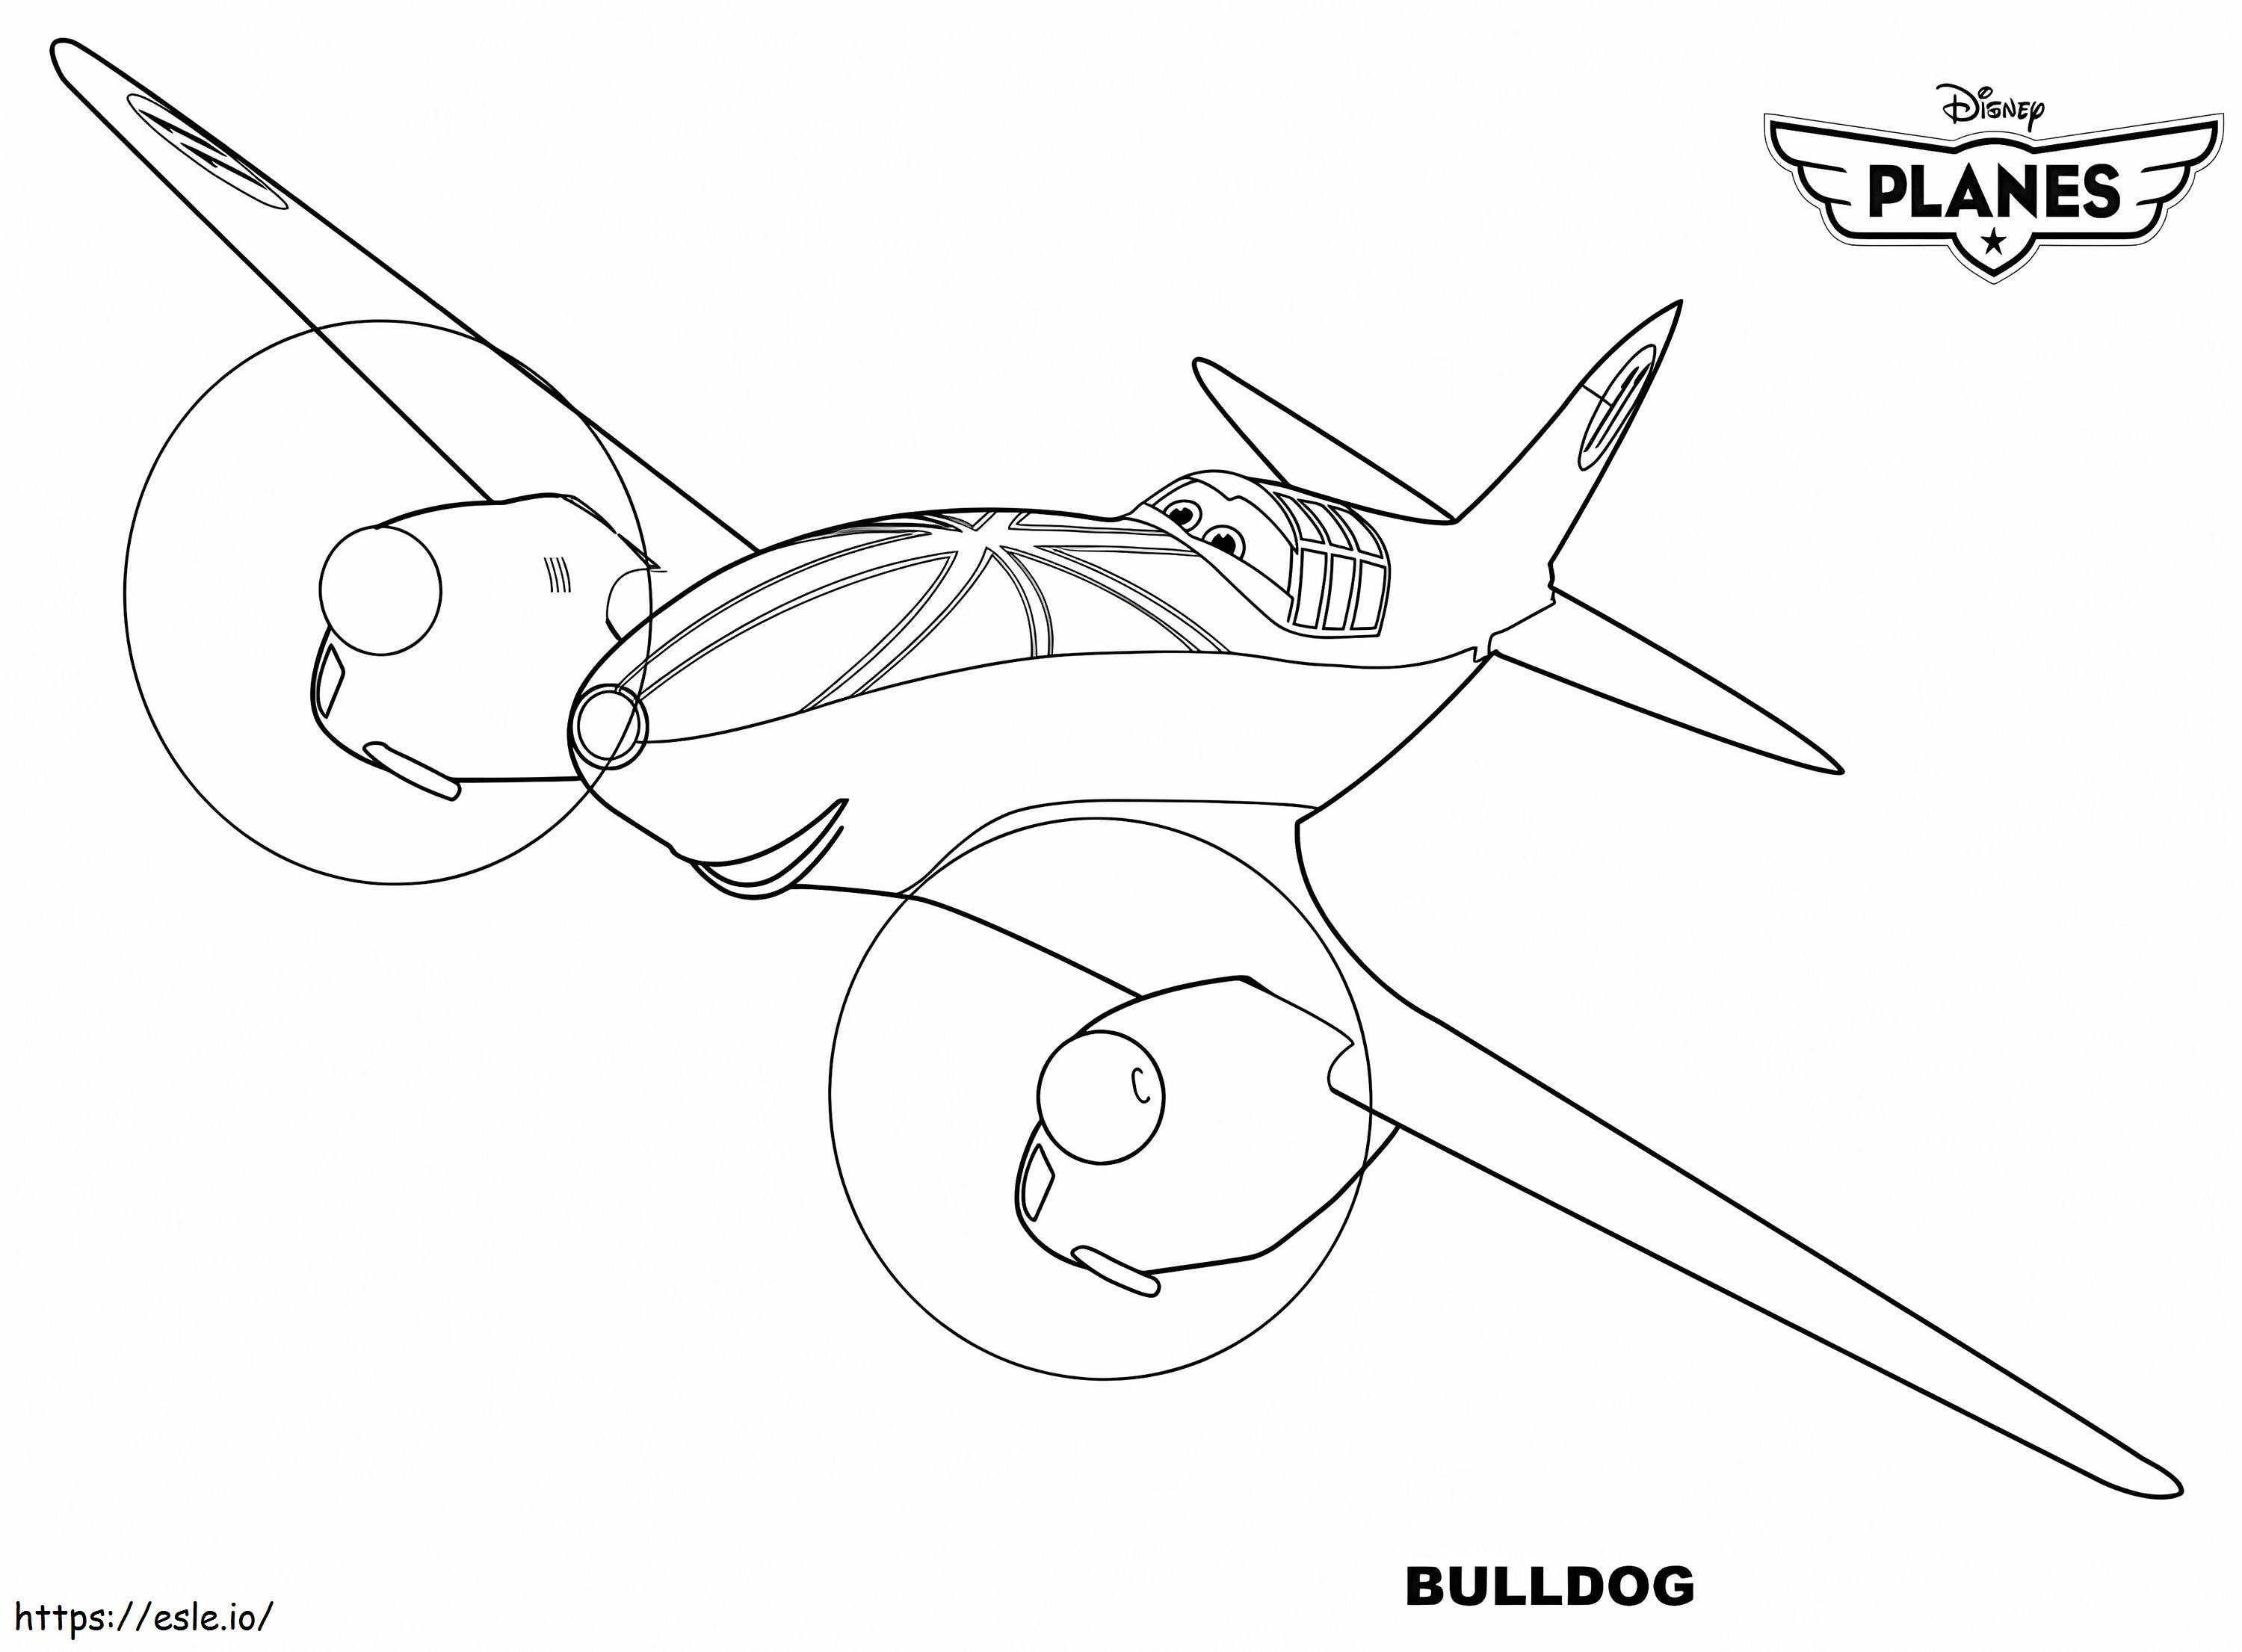 Bulldog di Disney Planes da colorare